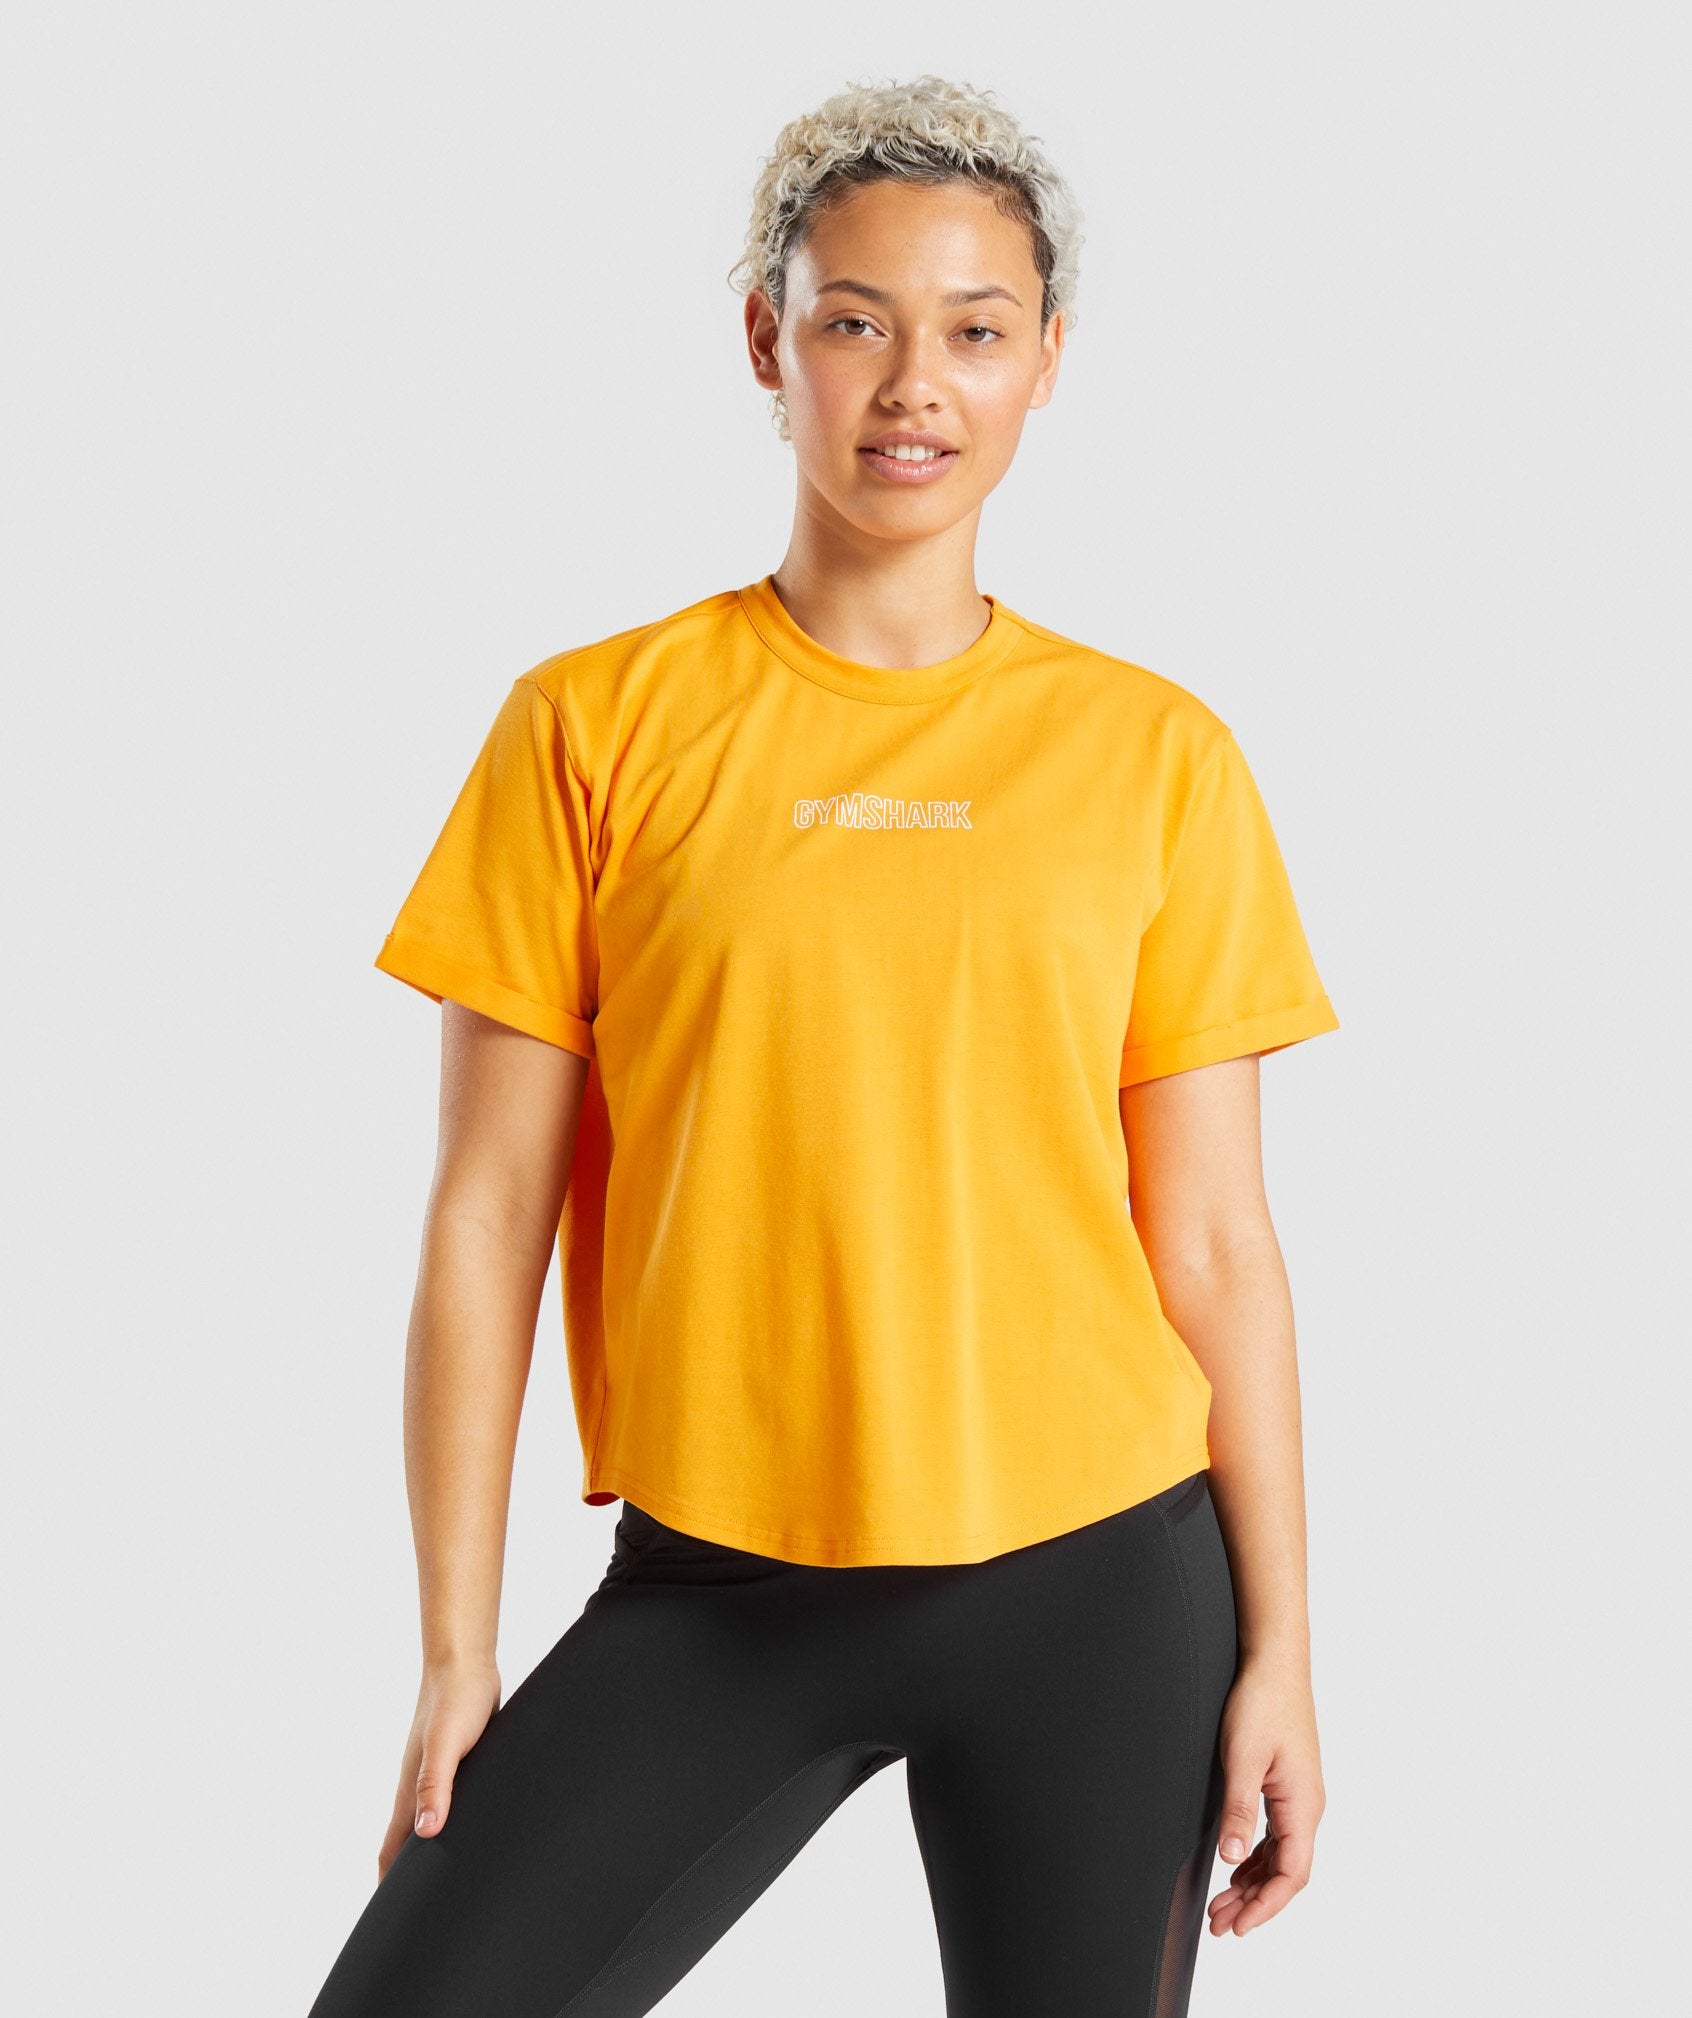 Distort Graphic T-Shirt in Orange - view 1